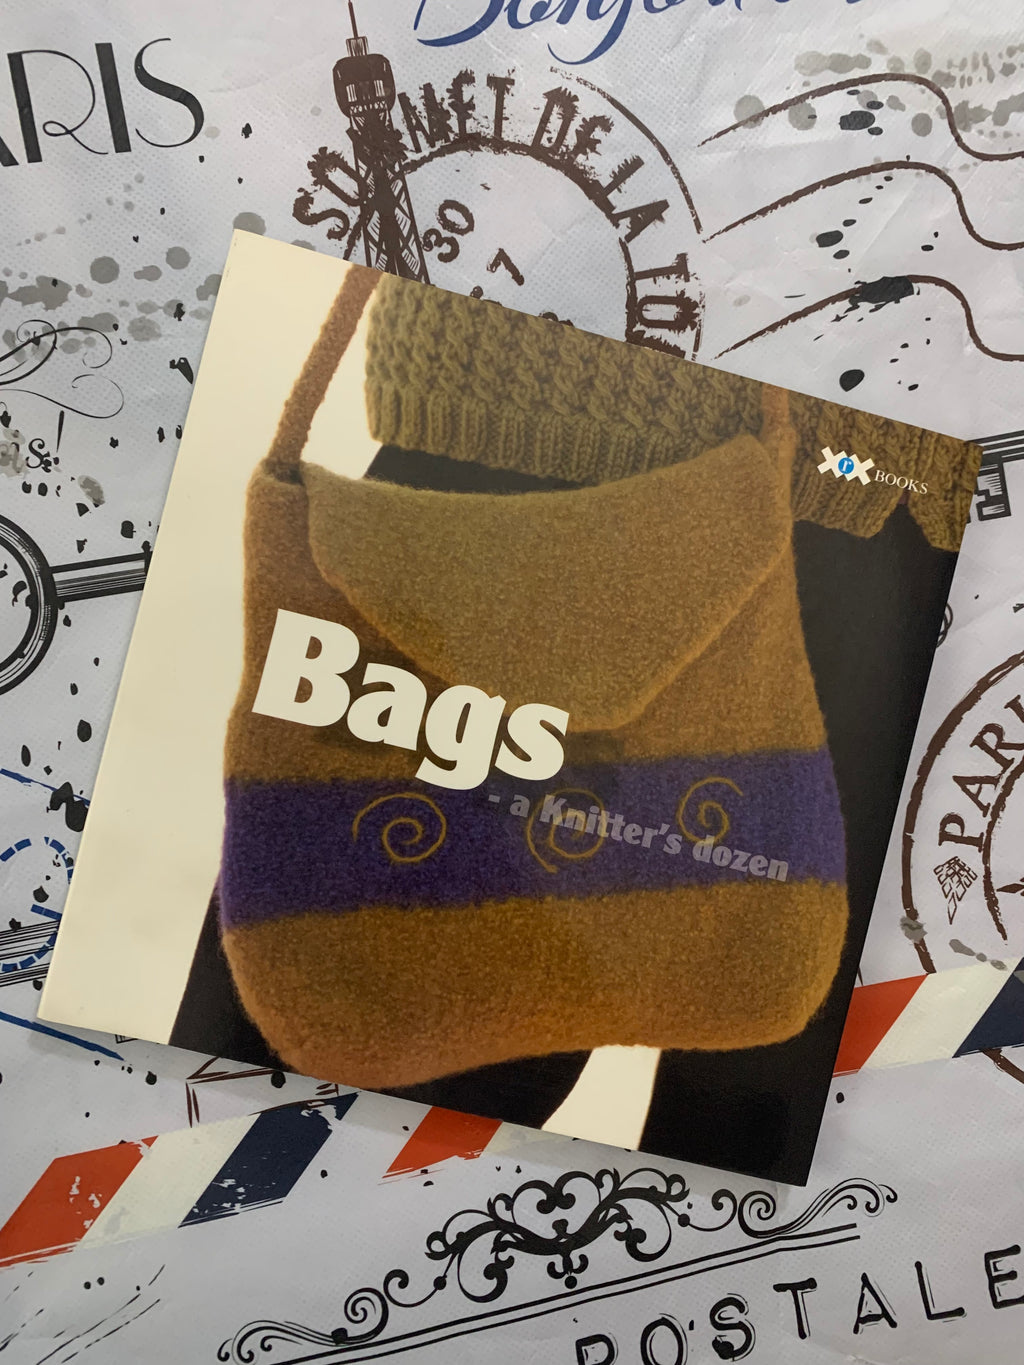 Bags: A Knitter's Dozen